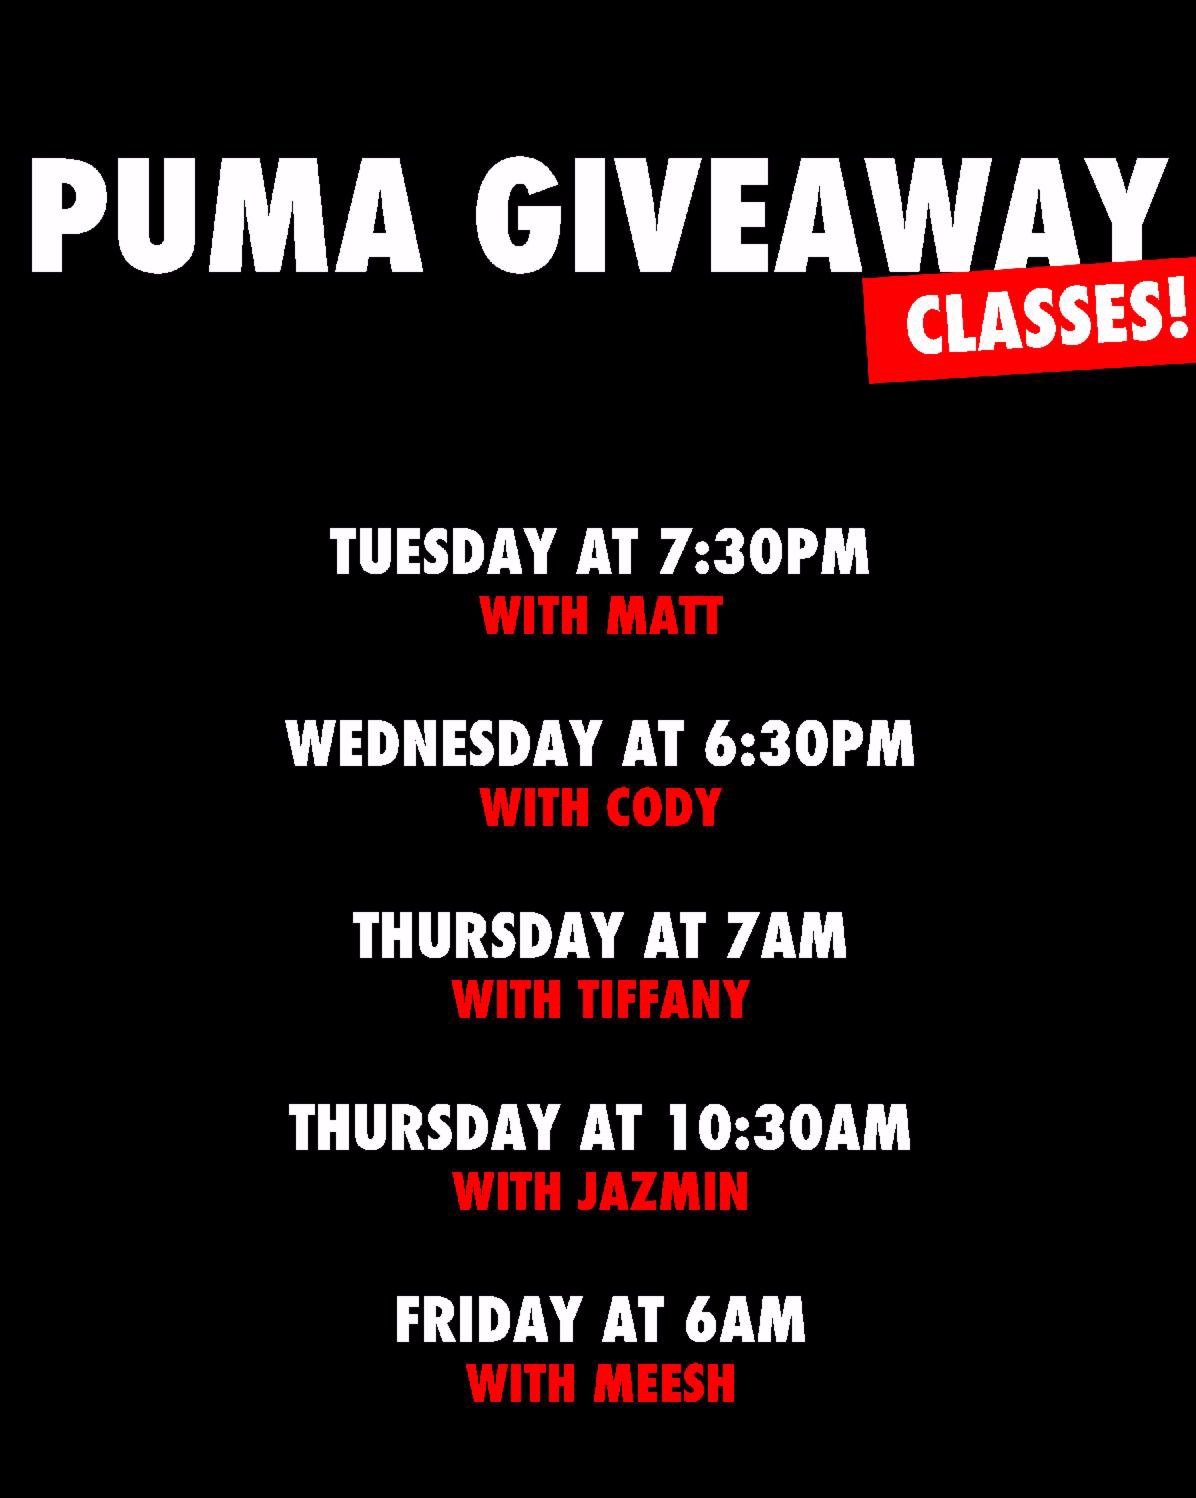 puma giveaway